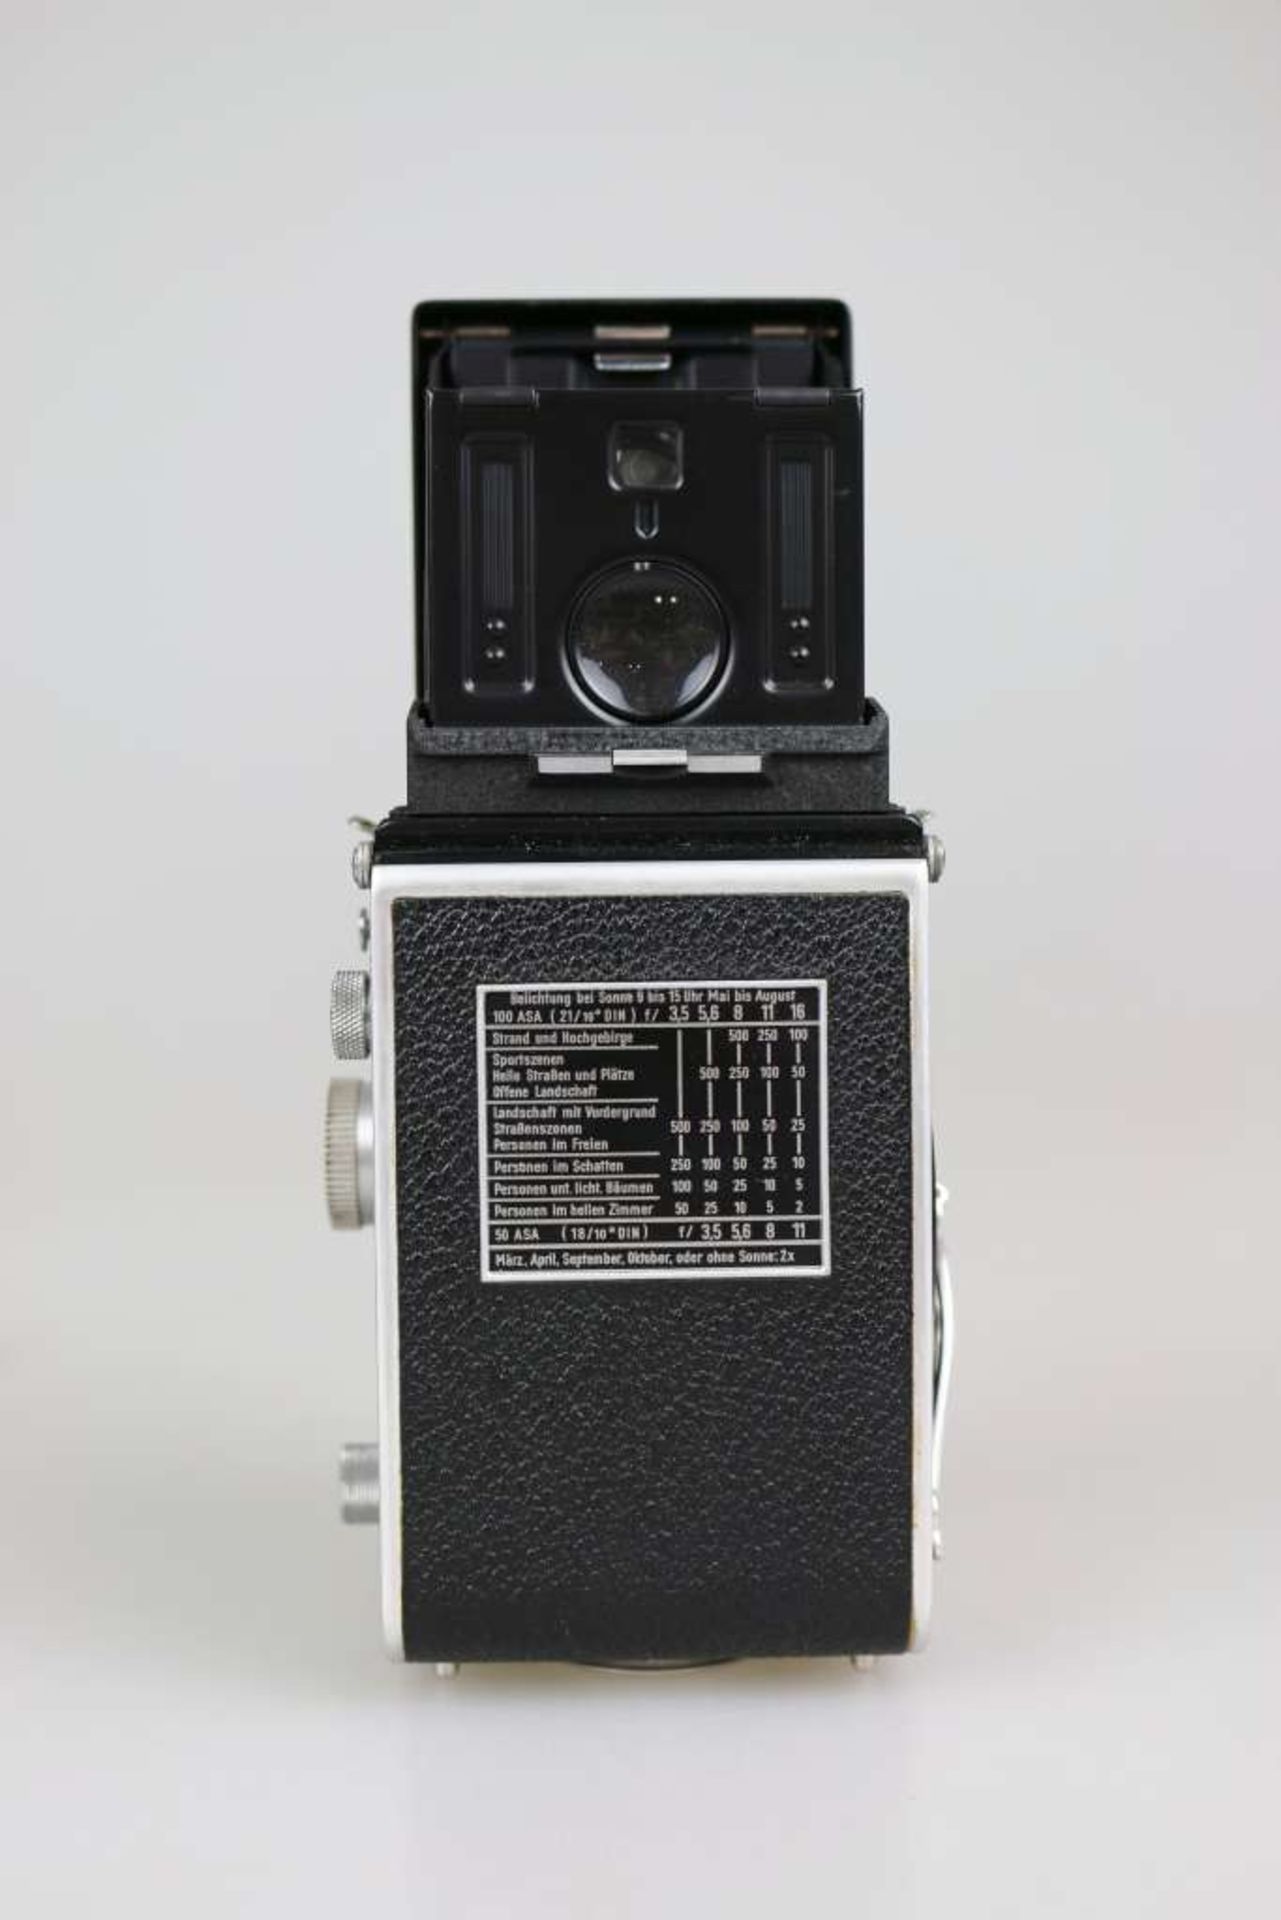 Kamera Rolleiflex, Franke u. Heidecke Braunschweig, zweiäugige Mittelformat-Spiegelreflexkamera, - Image 4 of 4